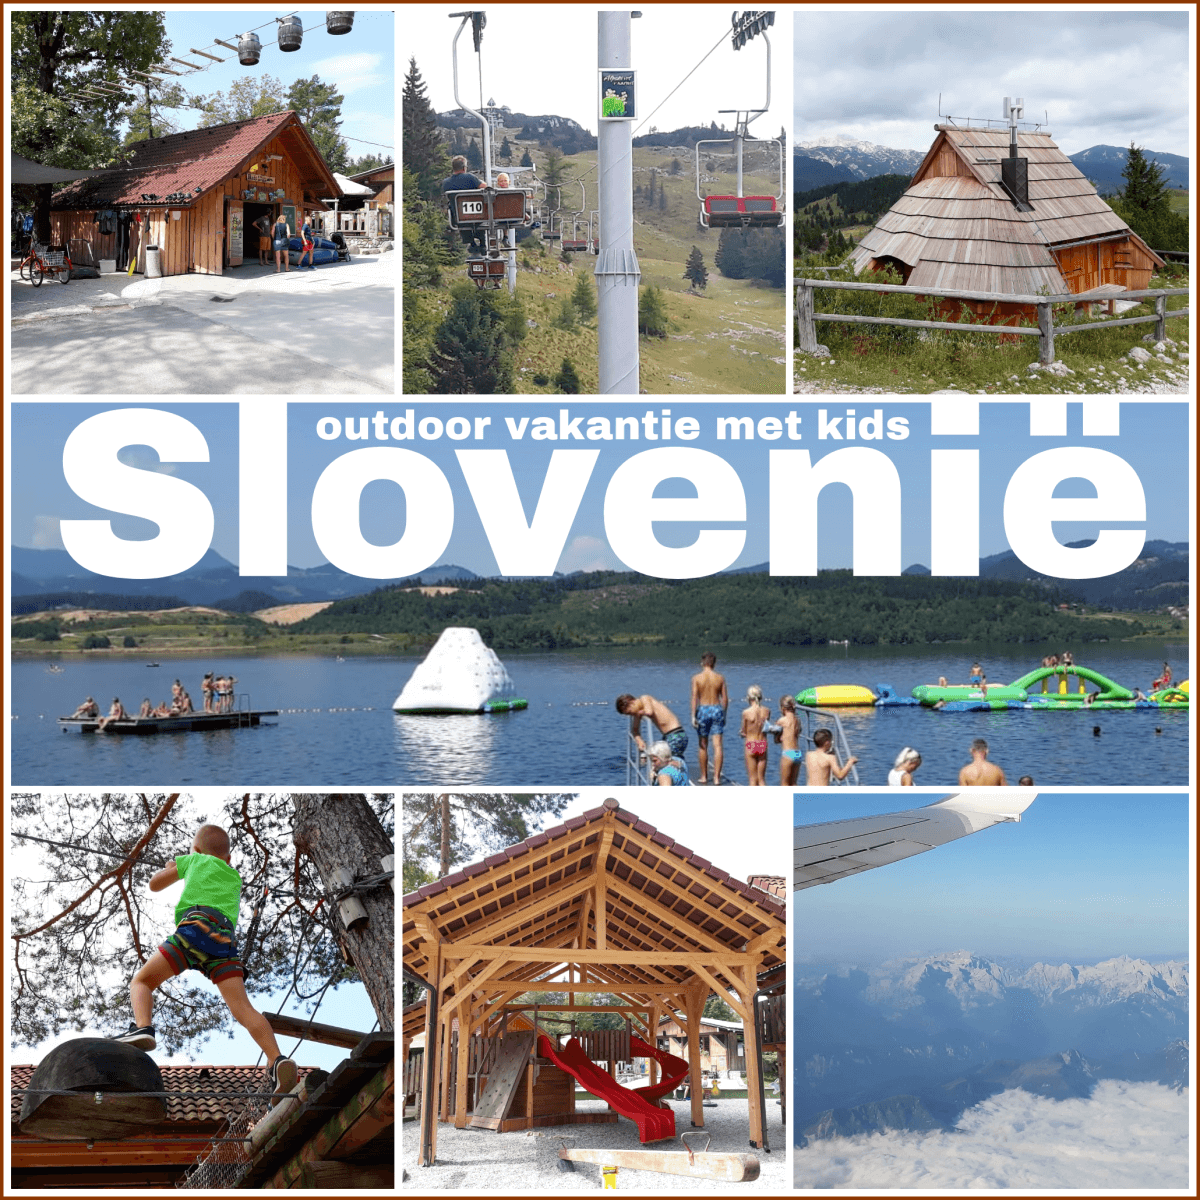 Vakantie in Slovenië met kids, Outdoor Paradijs! #leukmetkids #camping #Slovenia #outdoor #kids #kinderen #vakantie #klimmen #wandelen